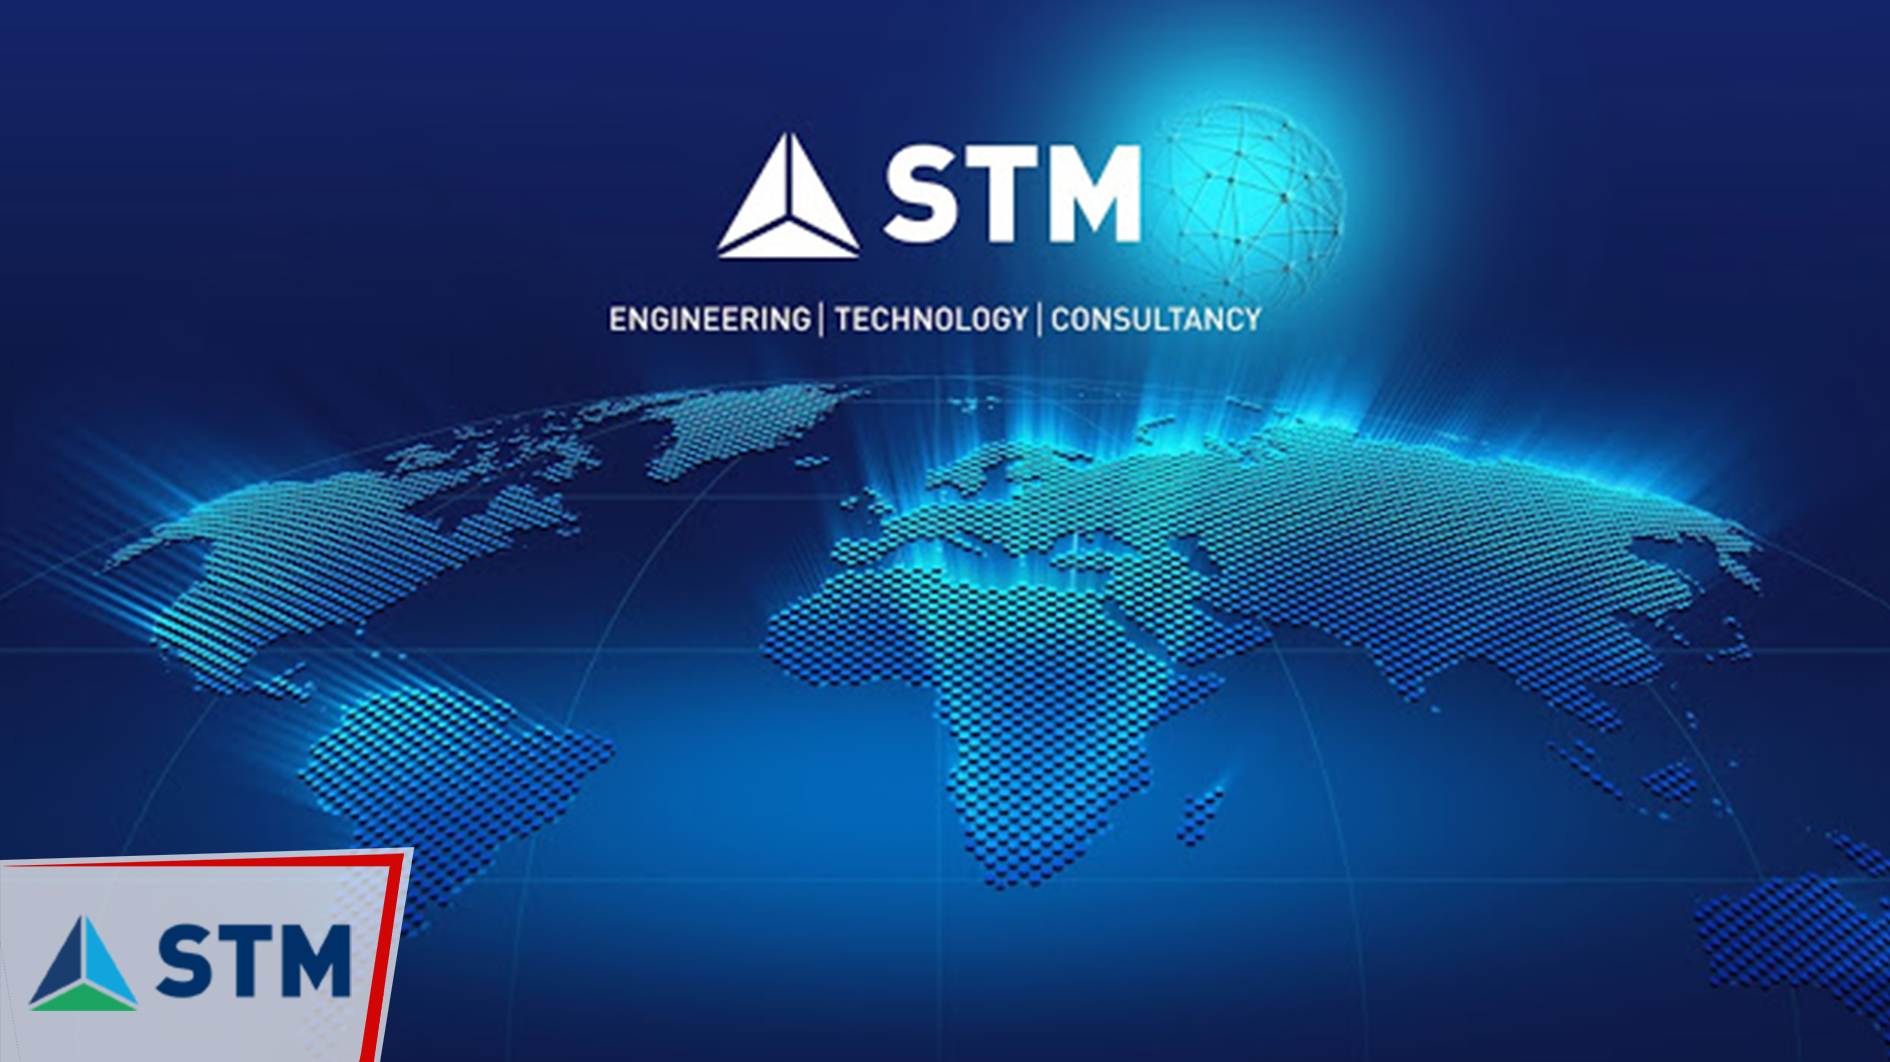 STM - Sınırsız Teknolojiler, Güvenli Yarınlar